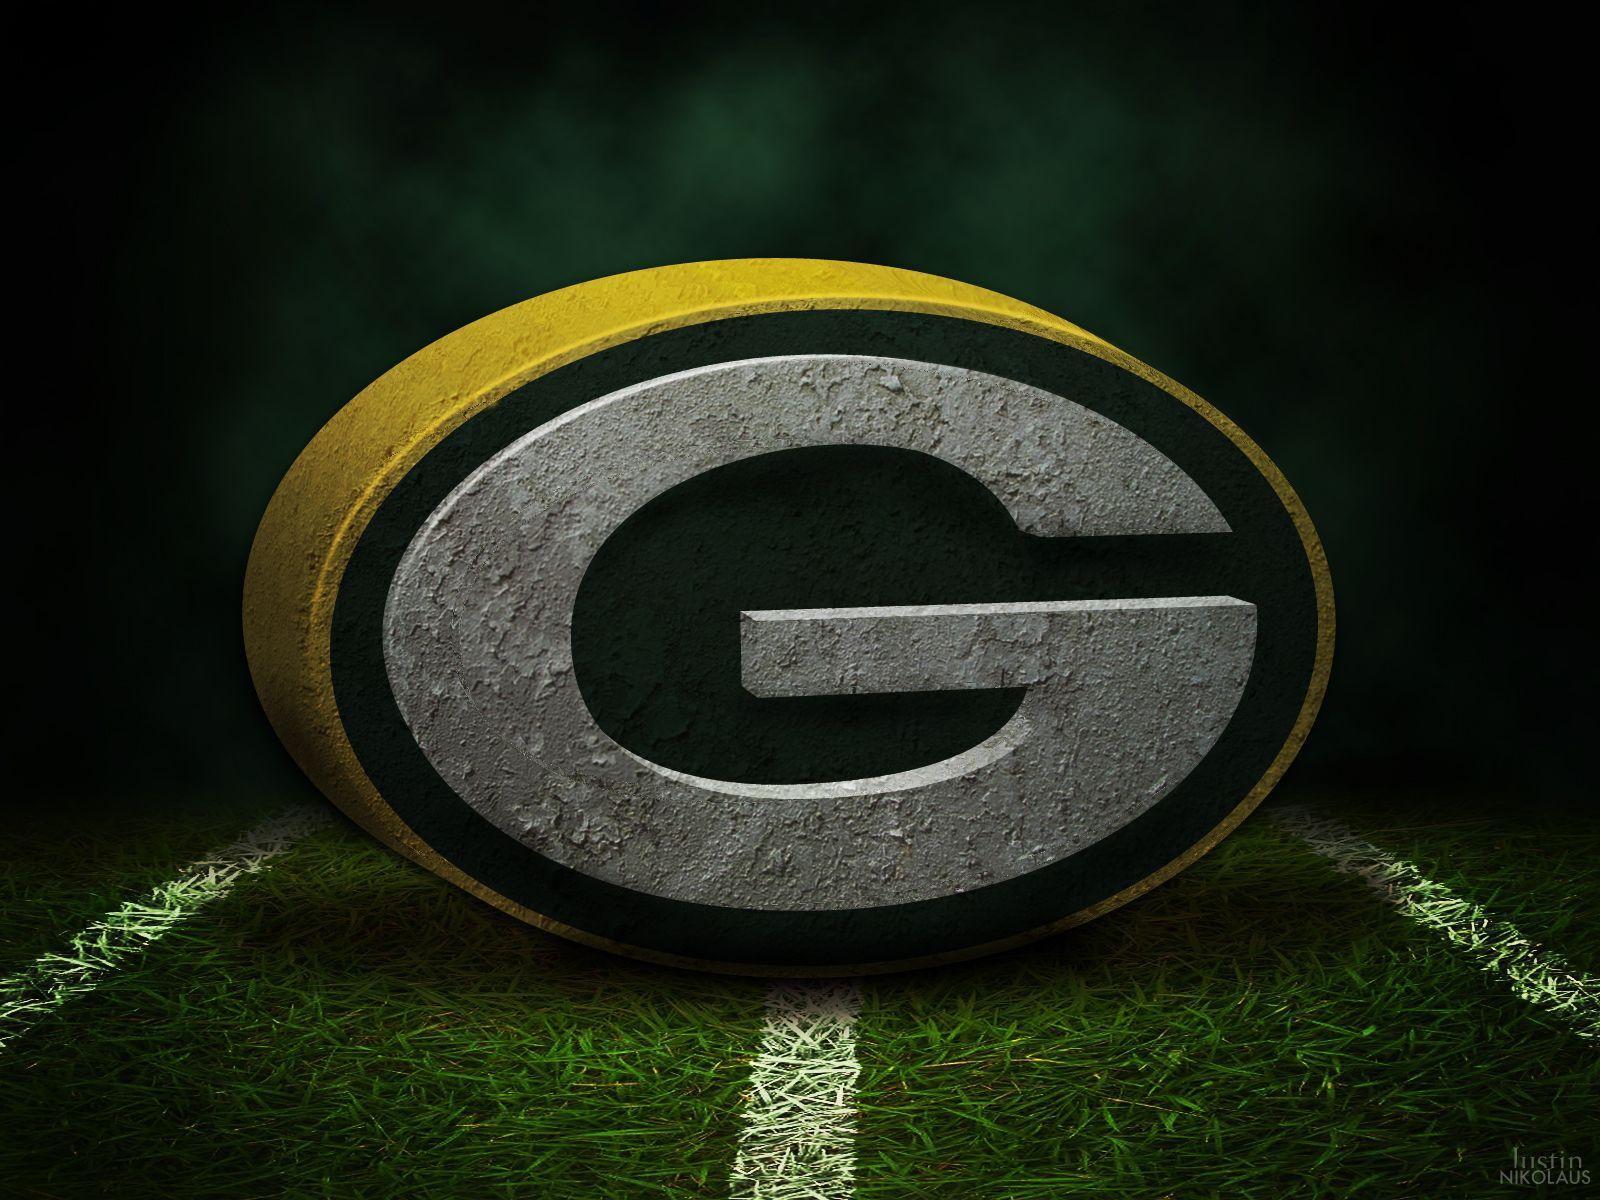 Green Bay Packers 3D Wallpaper. HD Desktop Wallpaper